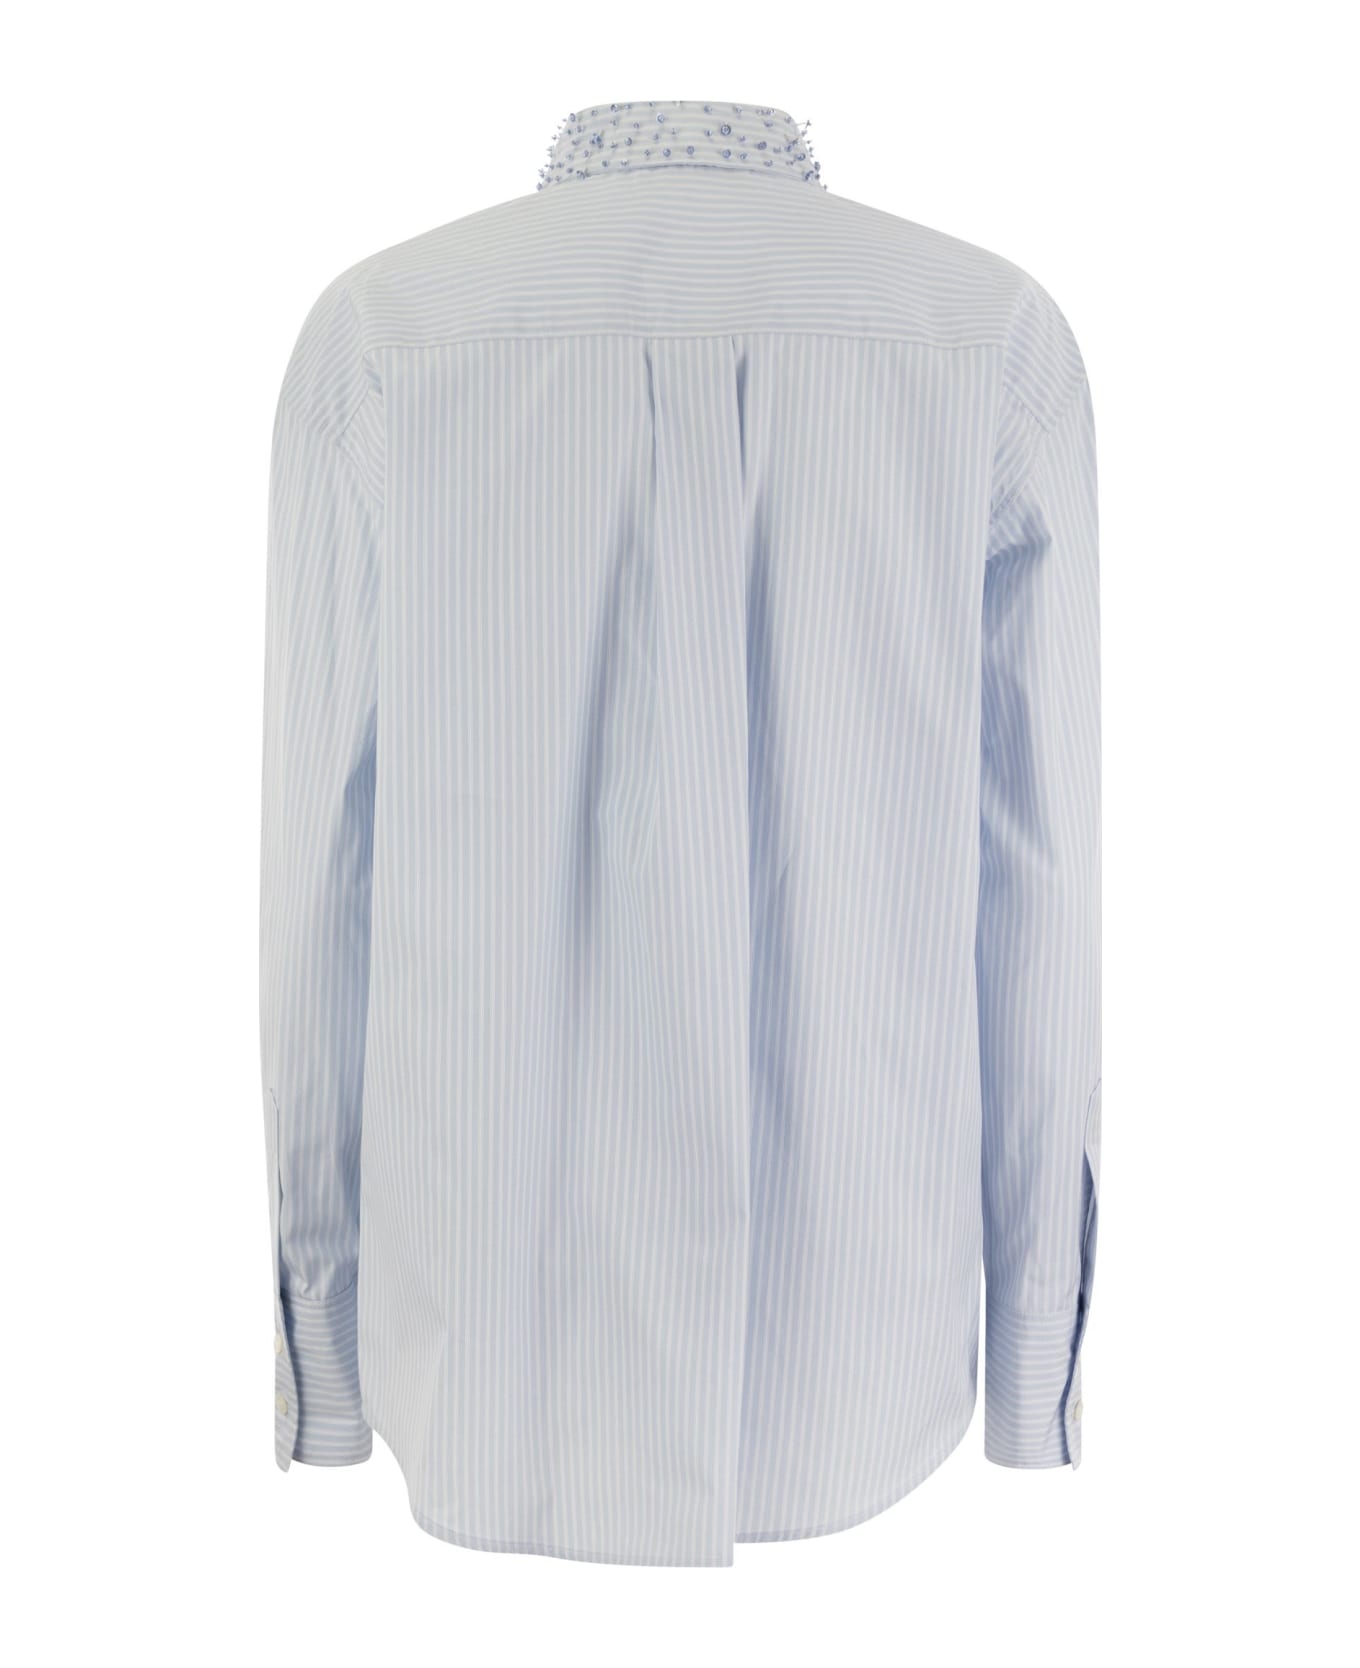 Fabiana Filippi Long Striped Poplin Shirt - Light Blue シャツ